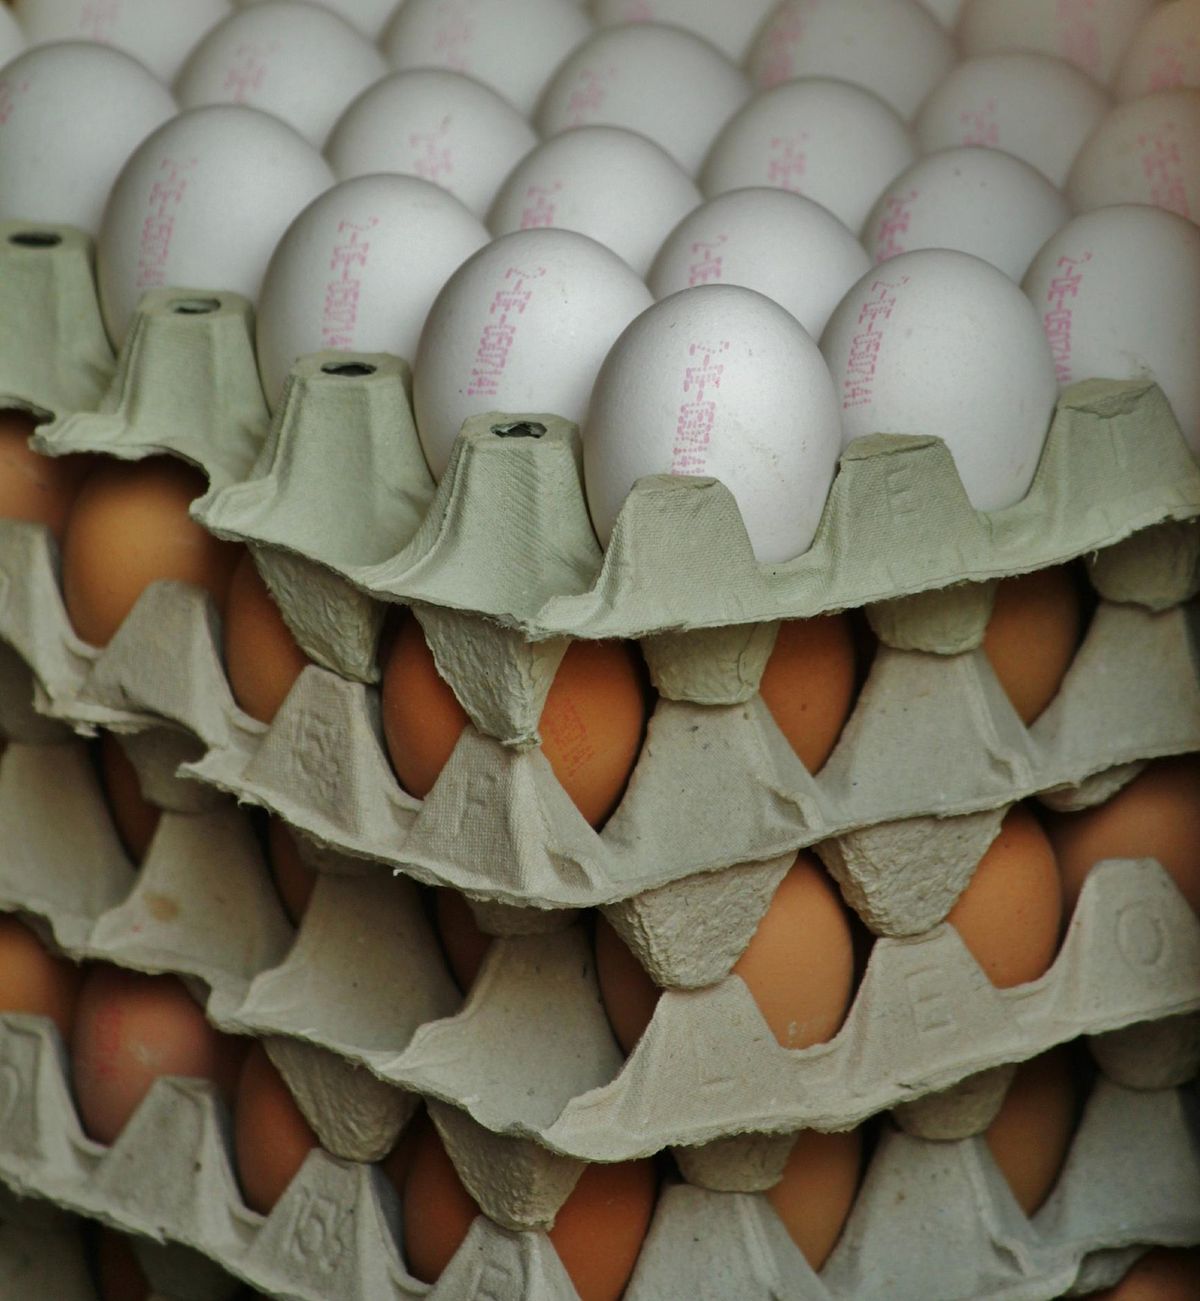 Česká republika obviňuje polské vývozce vajec z cenového dumpingu a klamání spotřebitelů